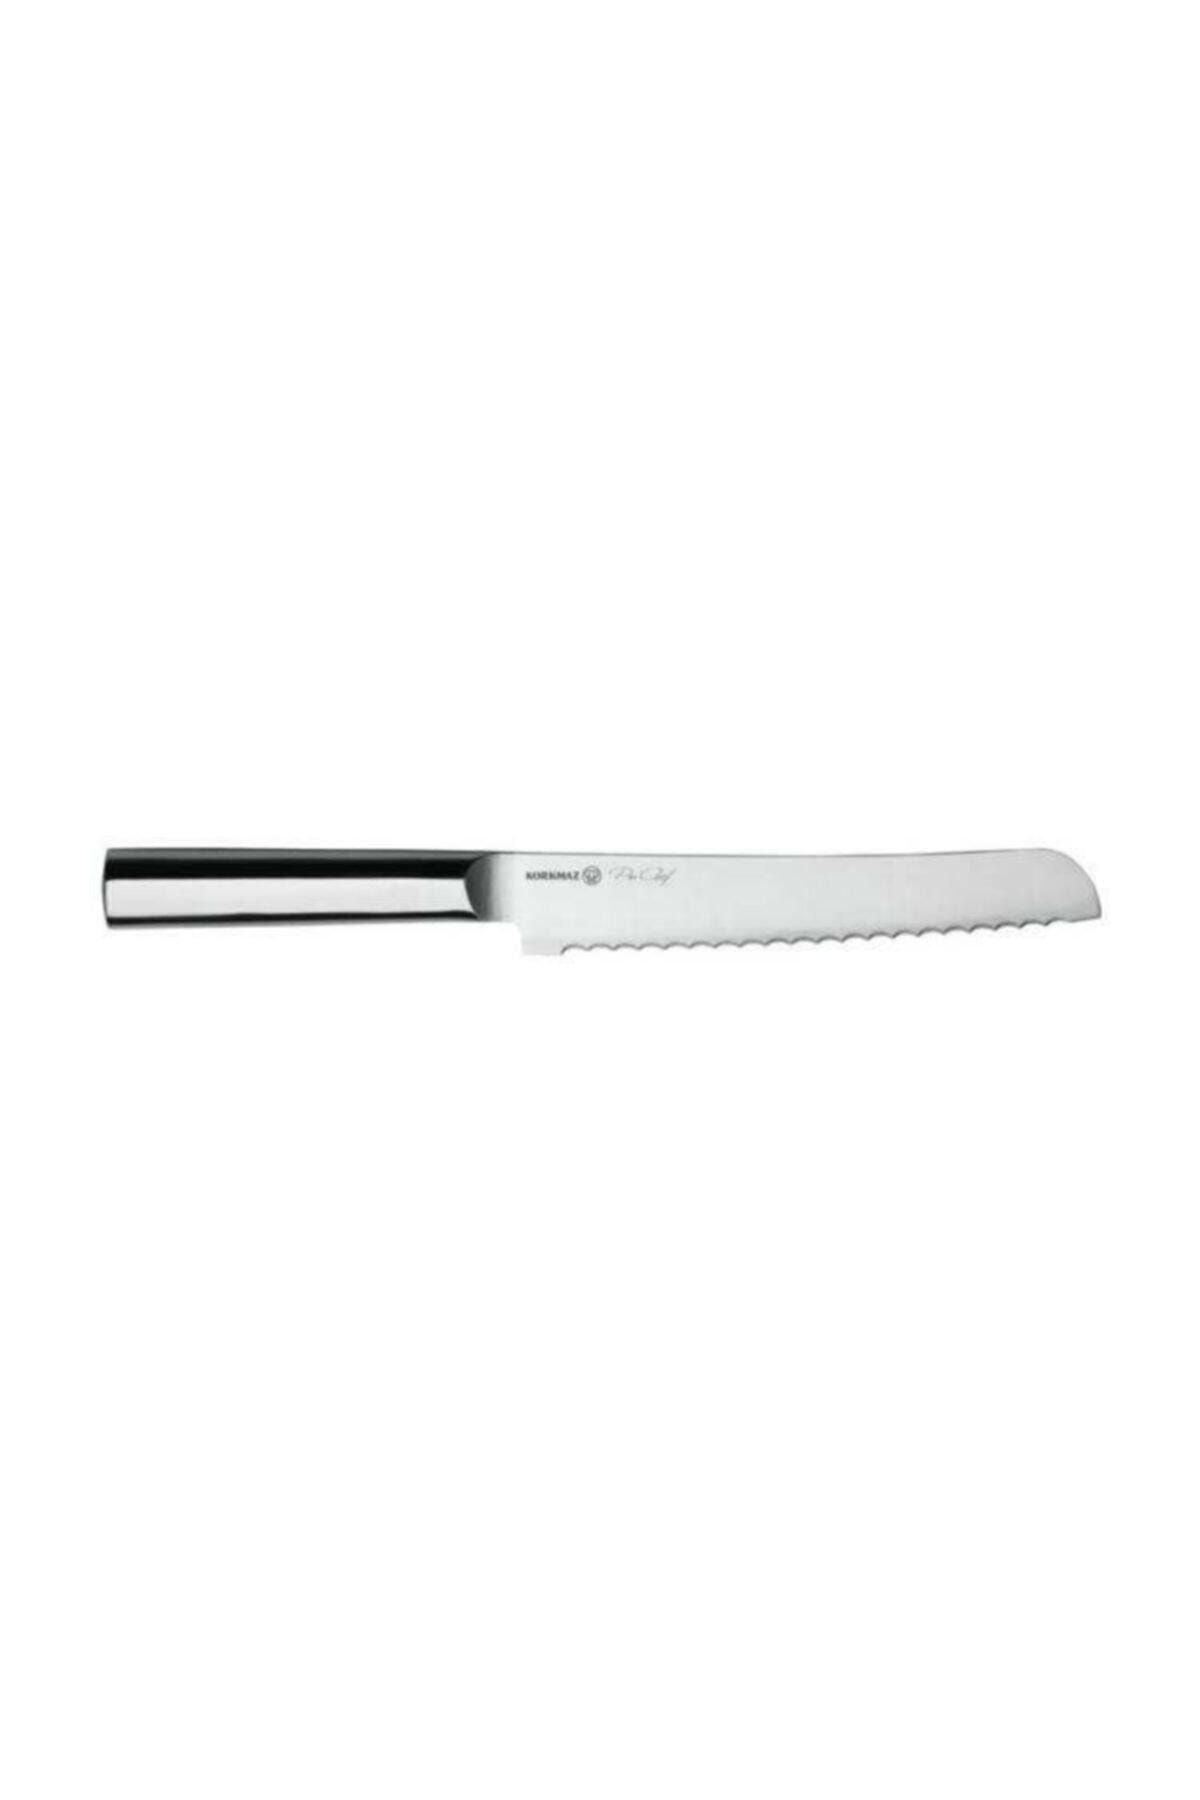 KORKMAZ Pro-chef Ekmek Bıçağı 20 cm A501-06